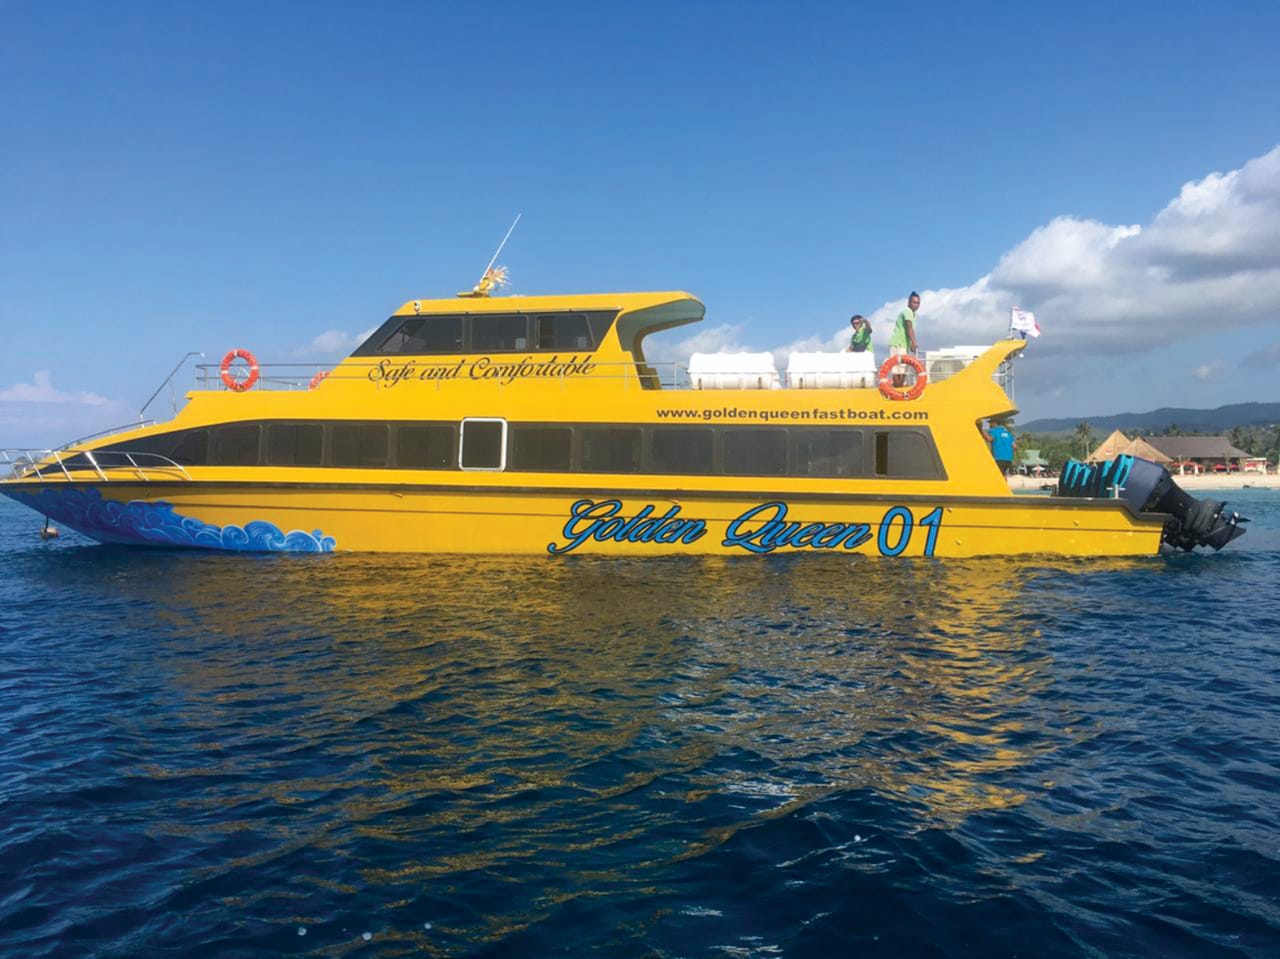 Golden Queen Fast Boat yellow